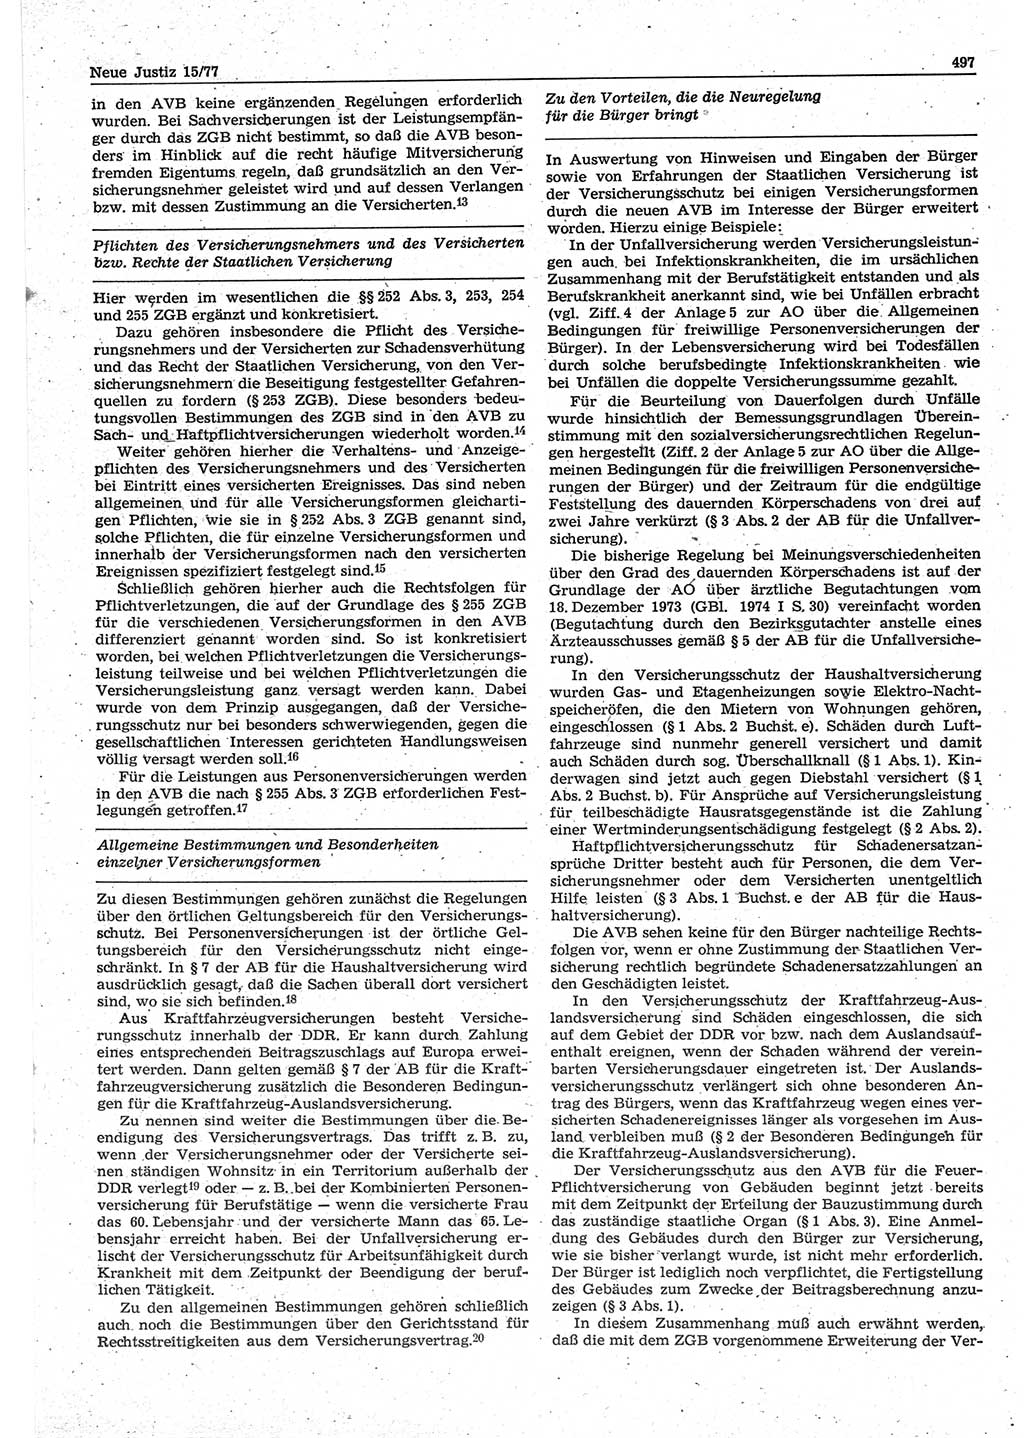 Neue Justiz (NJ), Zeitschrift für Recht und Rechtswissenschaft-Zeitschrift, sozialistisches Recht und Gesetzlichkeit, 31. Jahrgang 1977, Seite 497 (NJ DDR 1977, S. 497)